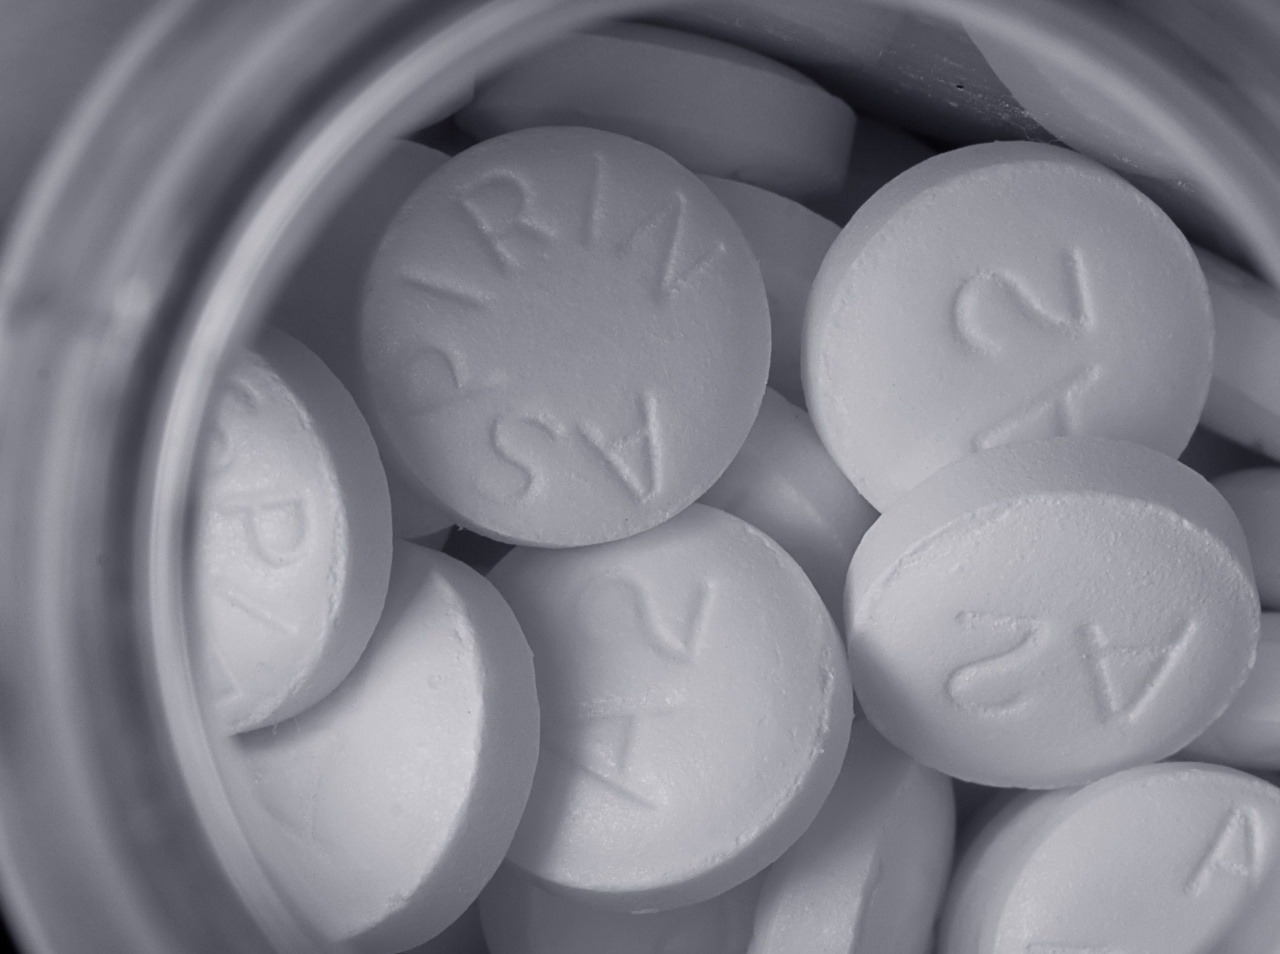 Aspirín ako nový liek v prevencii rakoviny.